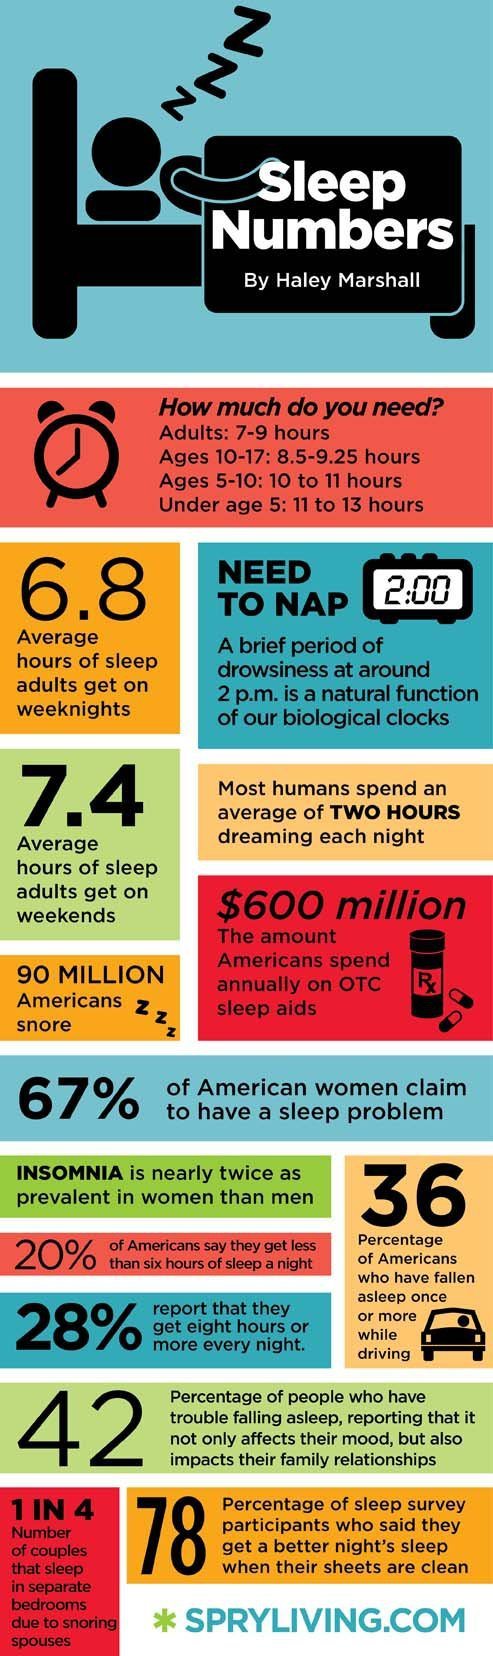 Infographic on Sleep